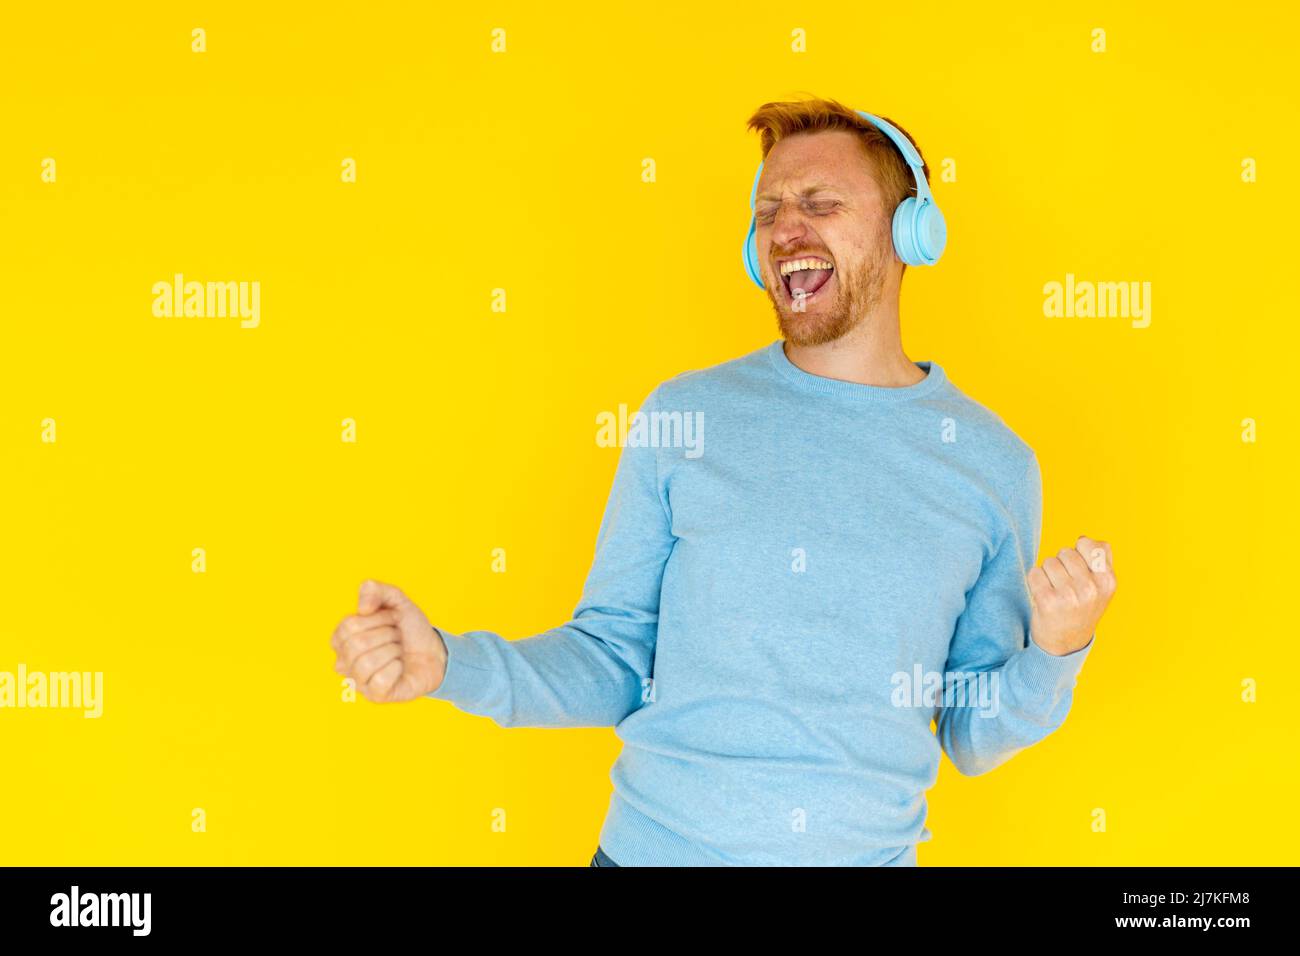 Glücklicher junger erwachsener hispanic Latino Mann, der vor gelbem Hintergrund tanzt Stockfoto